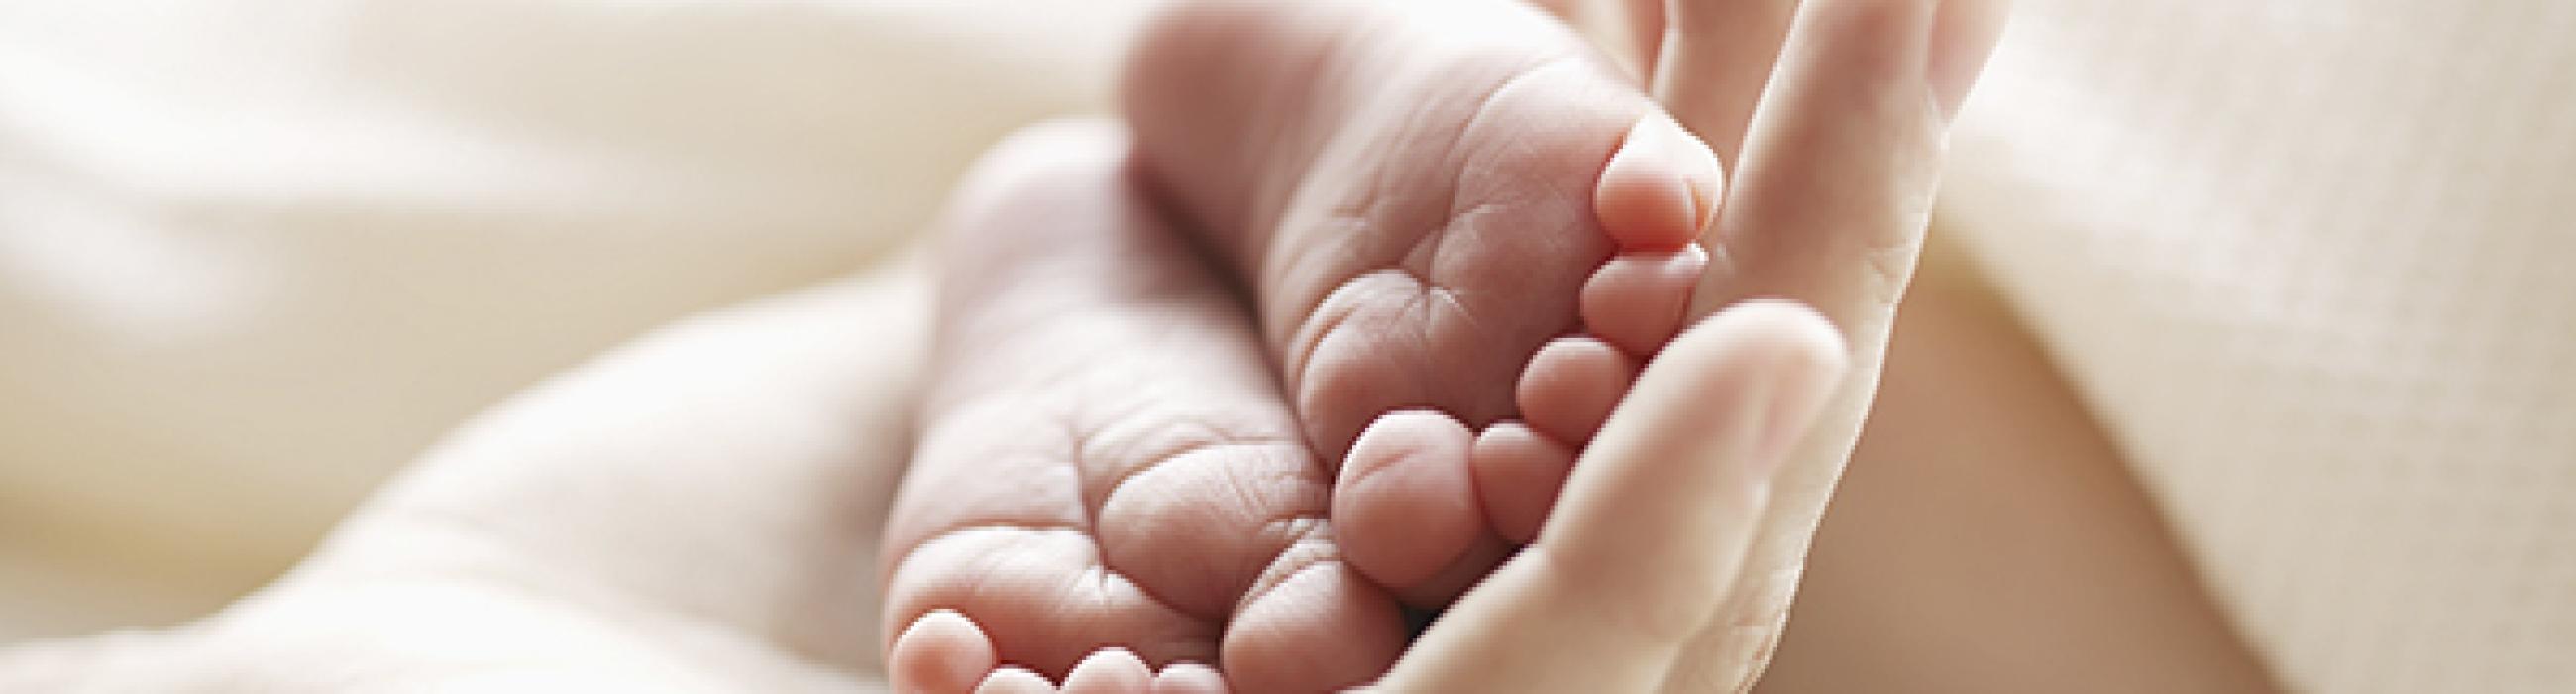 TEU en psicologia perinatal i salut materno-infantil